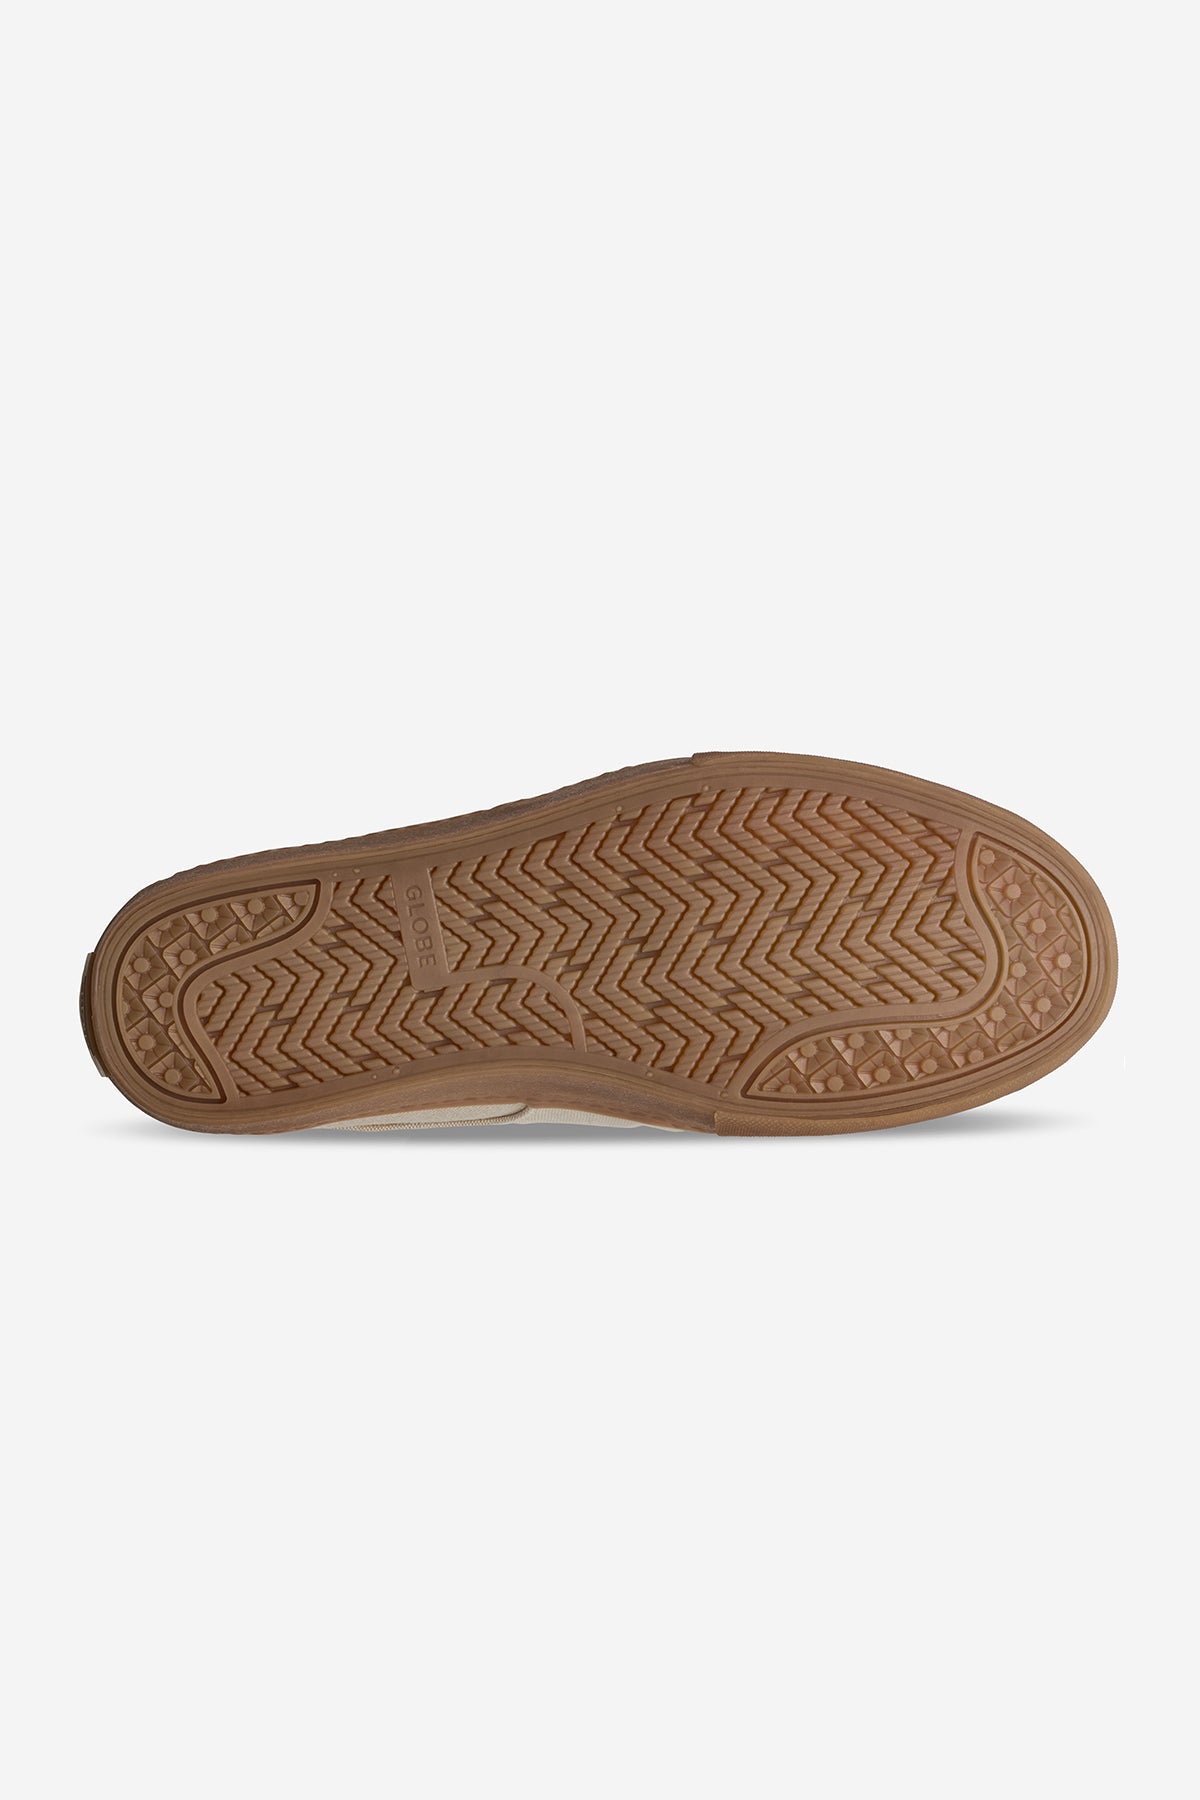 Globe - Liaizon - Hemp/Regrind Gum - Skate Shoes